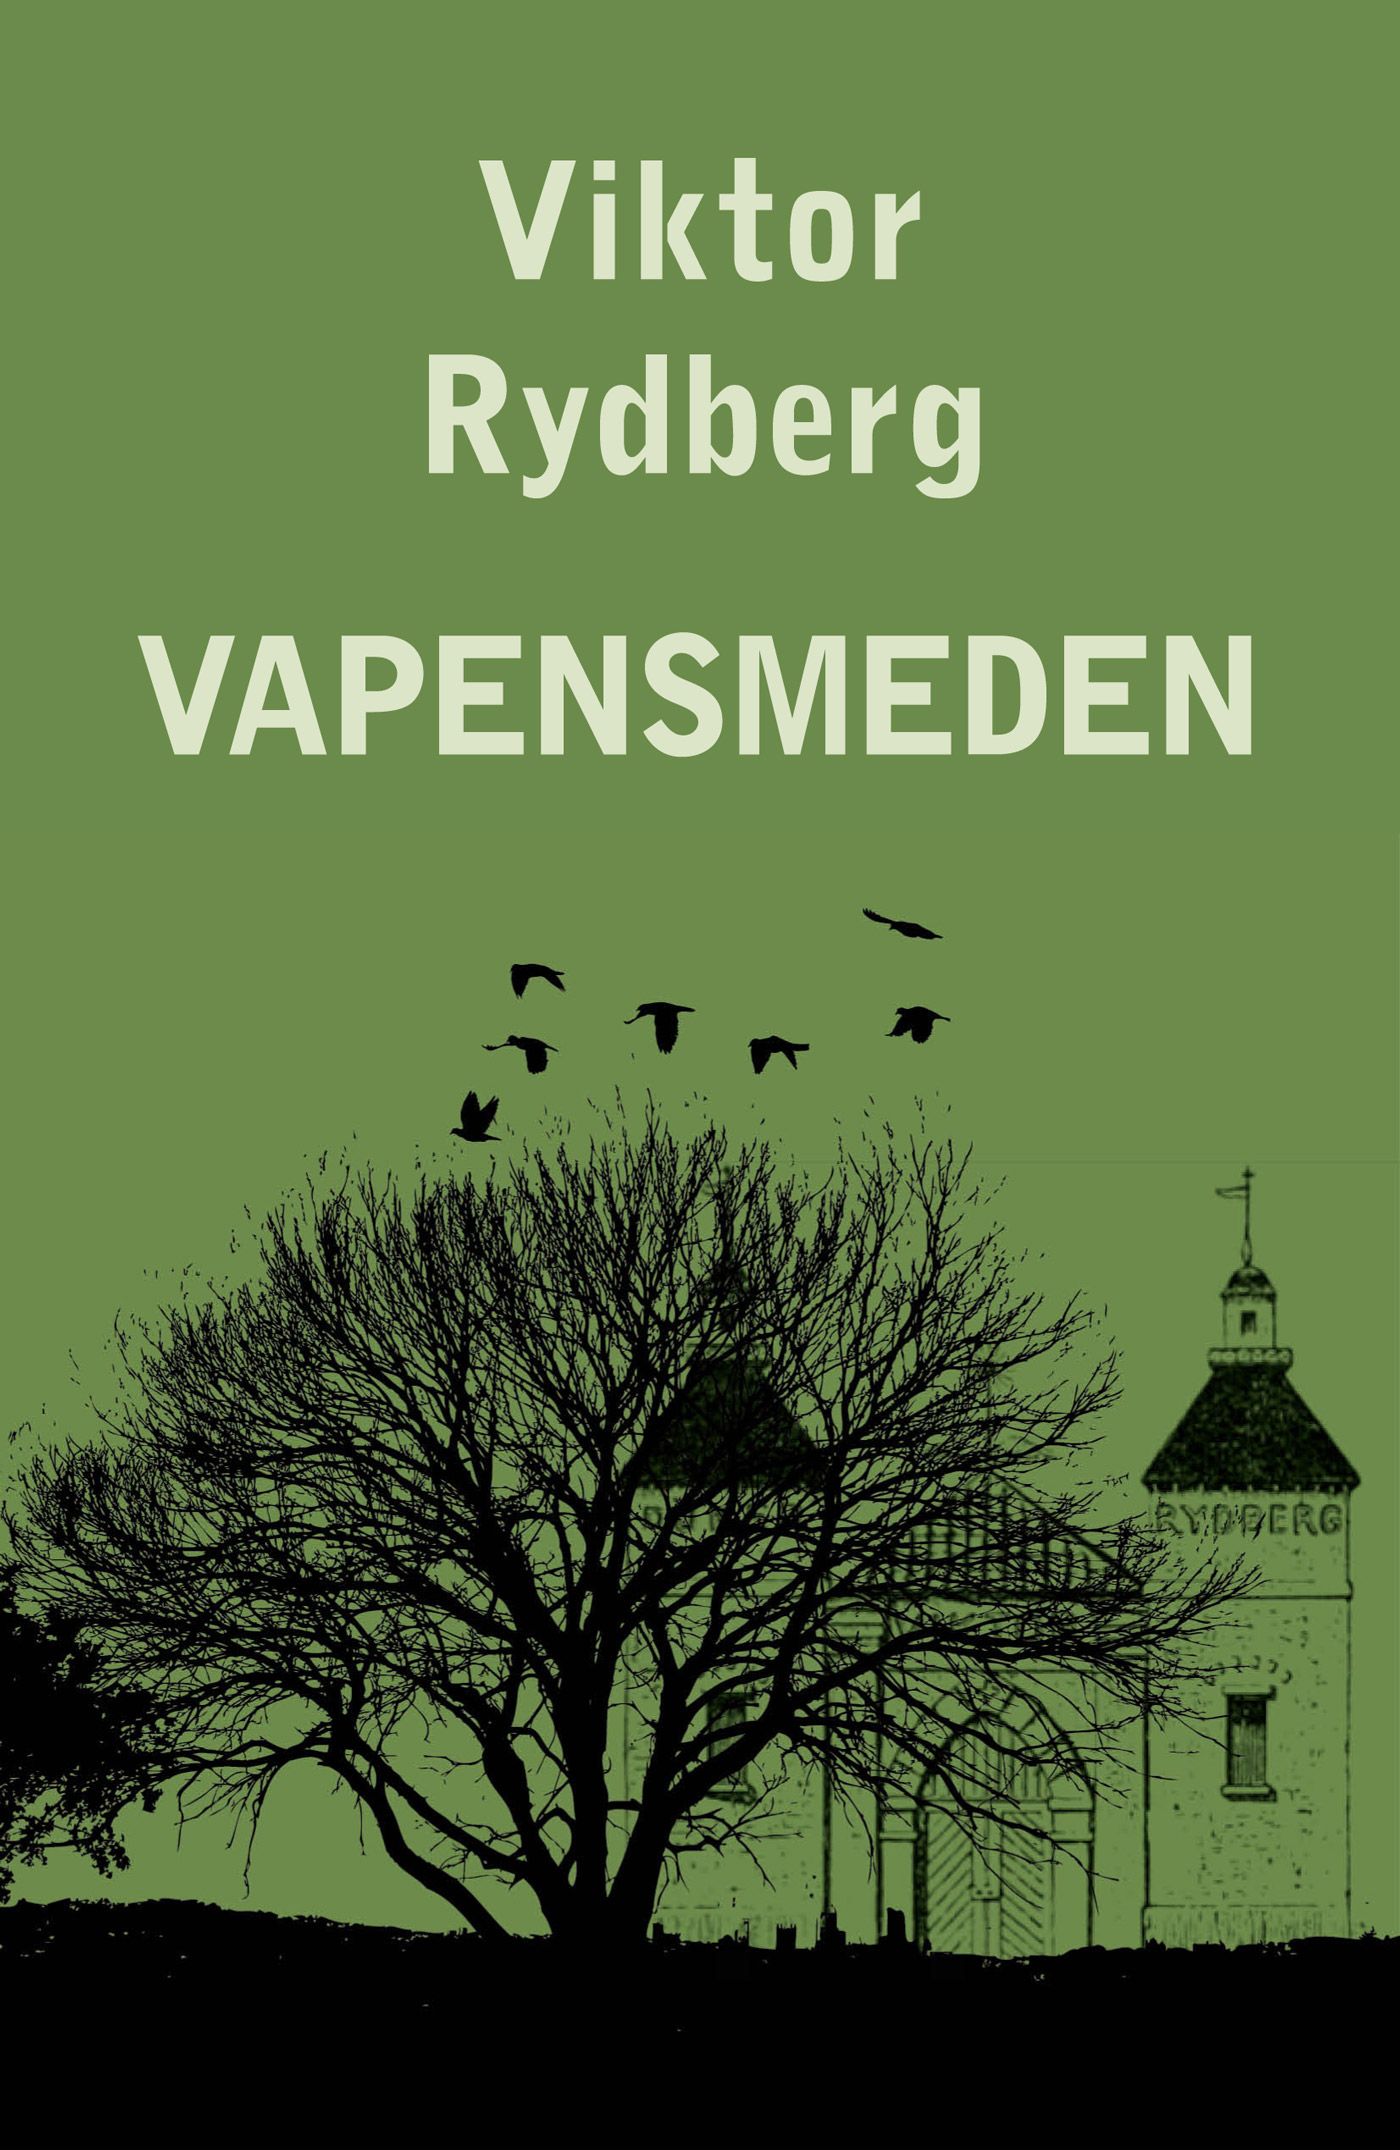 Vapensmeden, e-bok av Viktor Rydberg